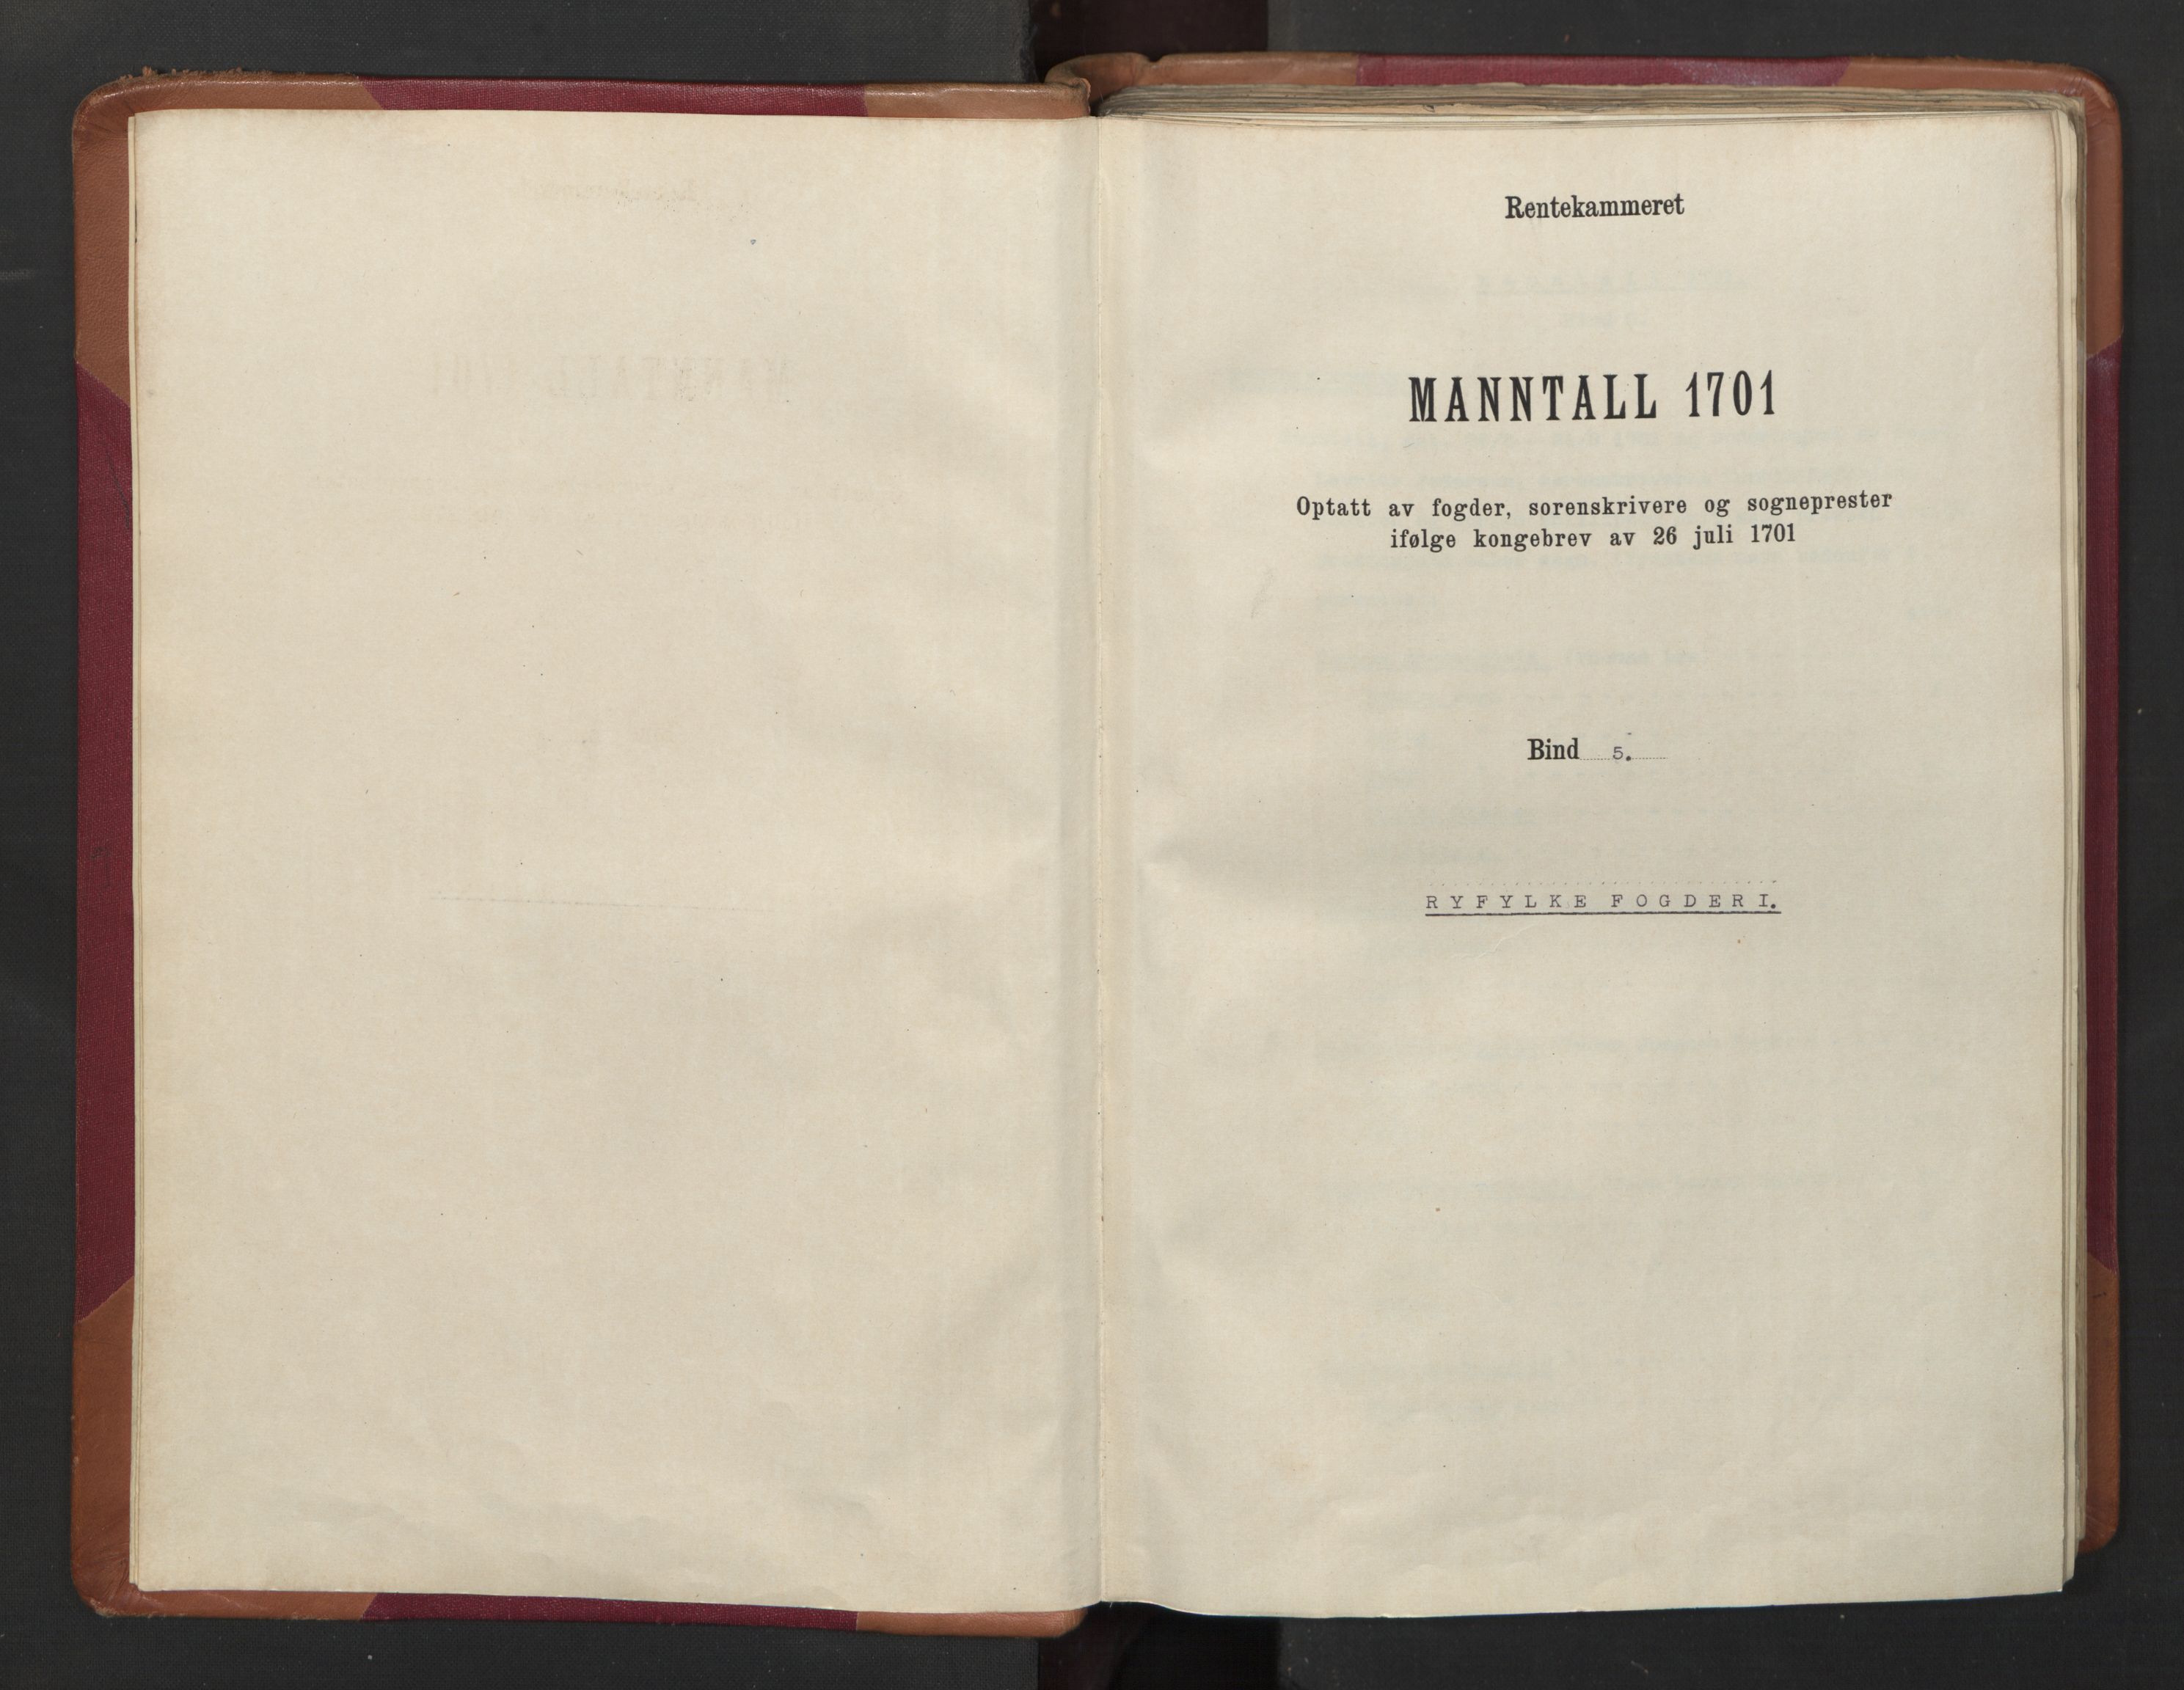 RA, Census (manntall) 1701, no. 5: Ryfylke fogderi, 1701